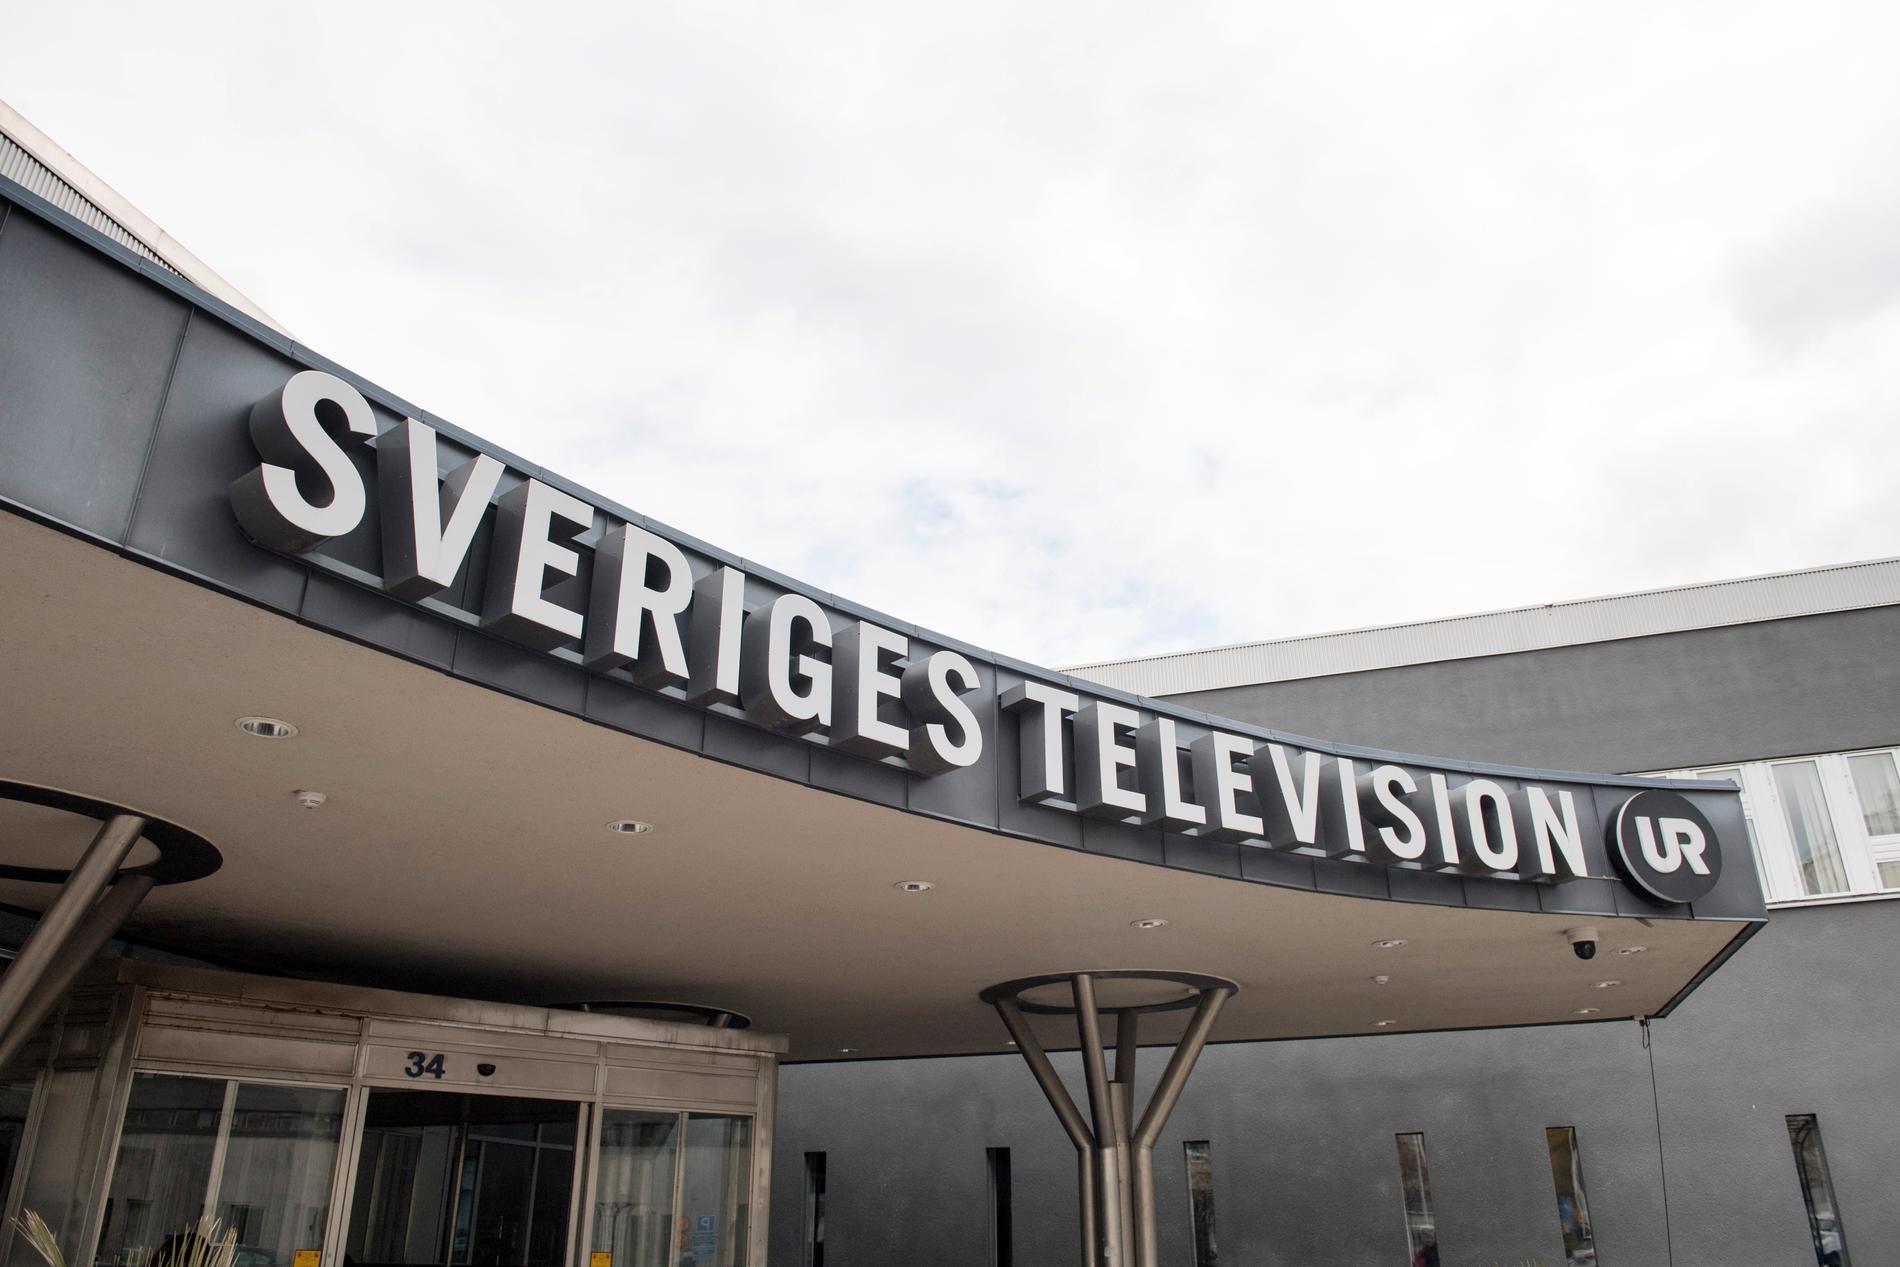 För snart tre veckor sedan genomfördes en polisinsats i SVT:s lokaler efter att en medarbetare larmat om ett misstänkt farligt föremål.